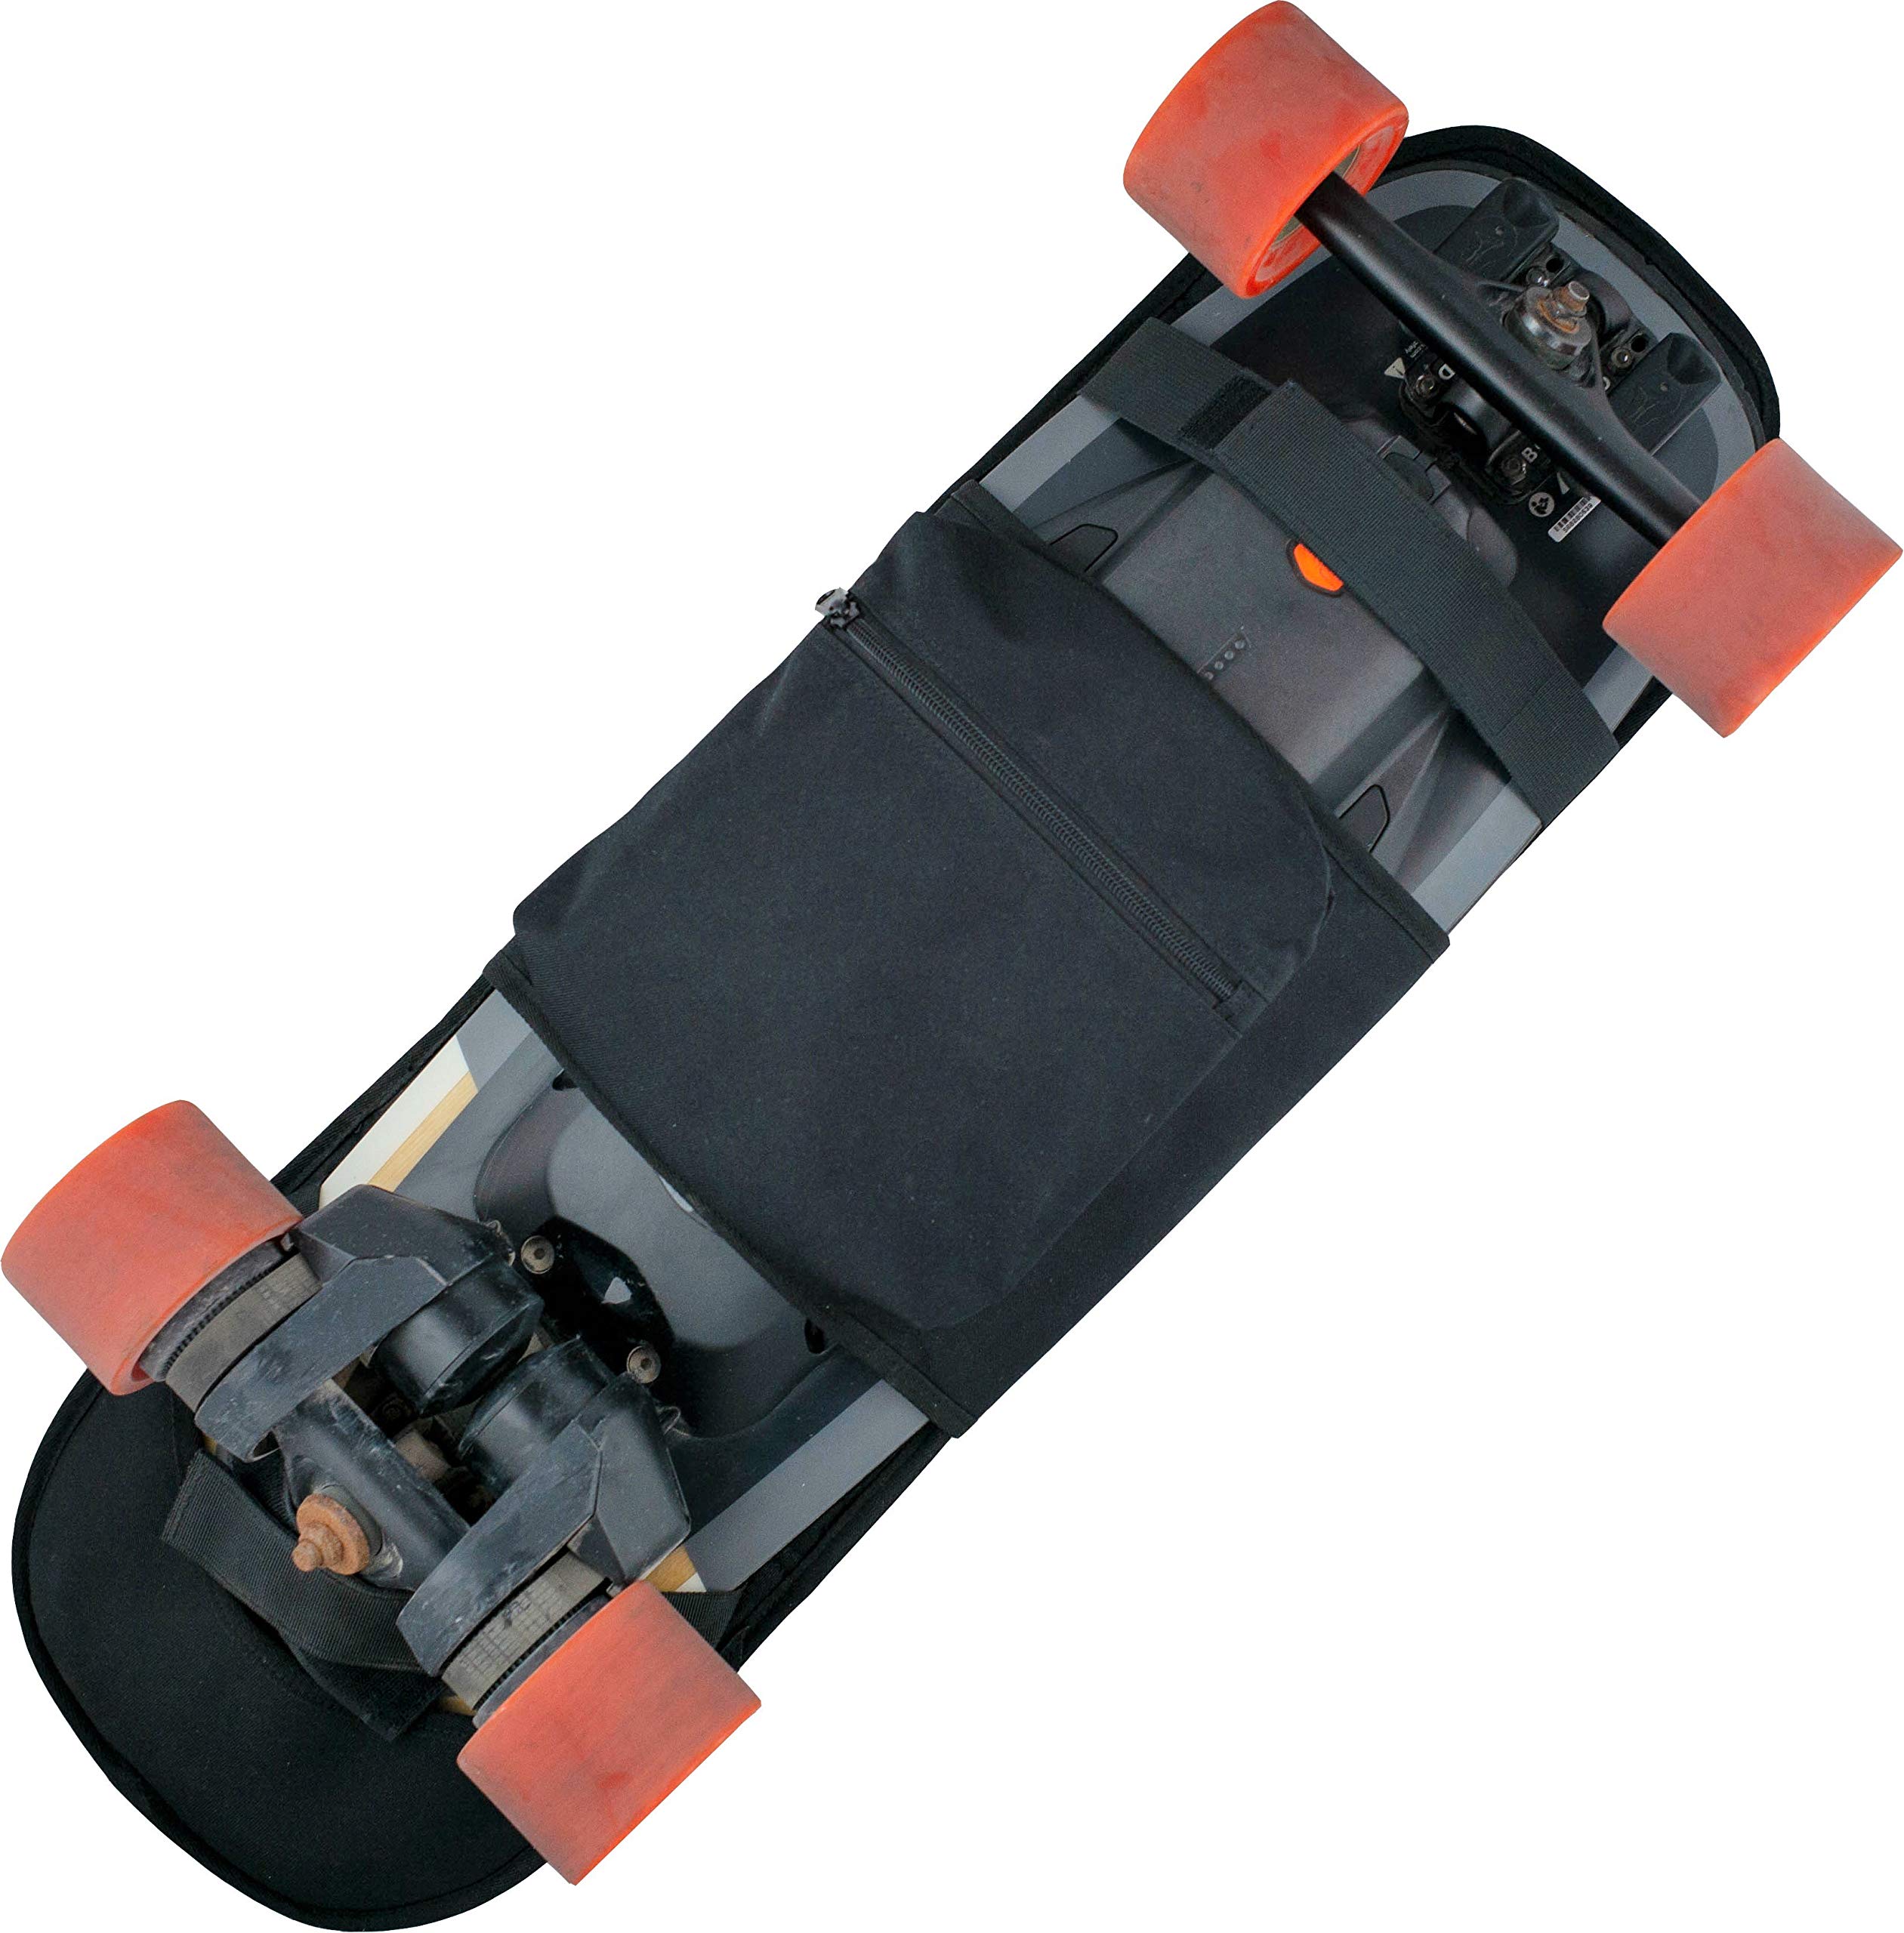 Skateboards Best Offer ⋆ Skateboards Best Deals at OutdoorFull.com